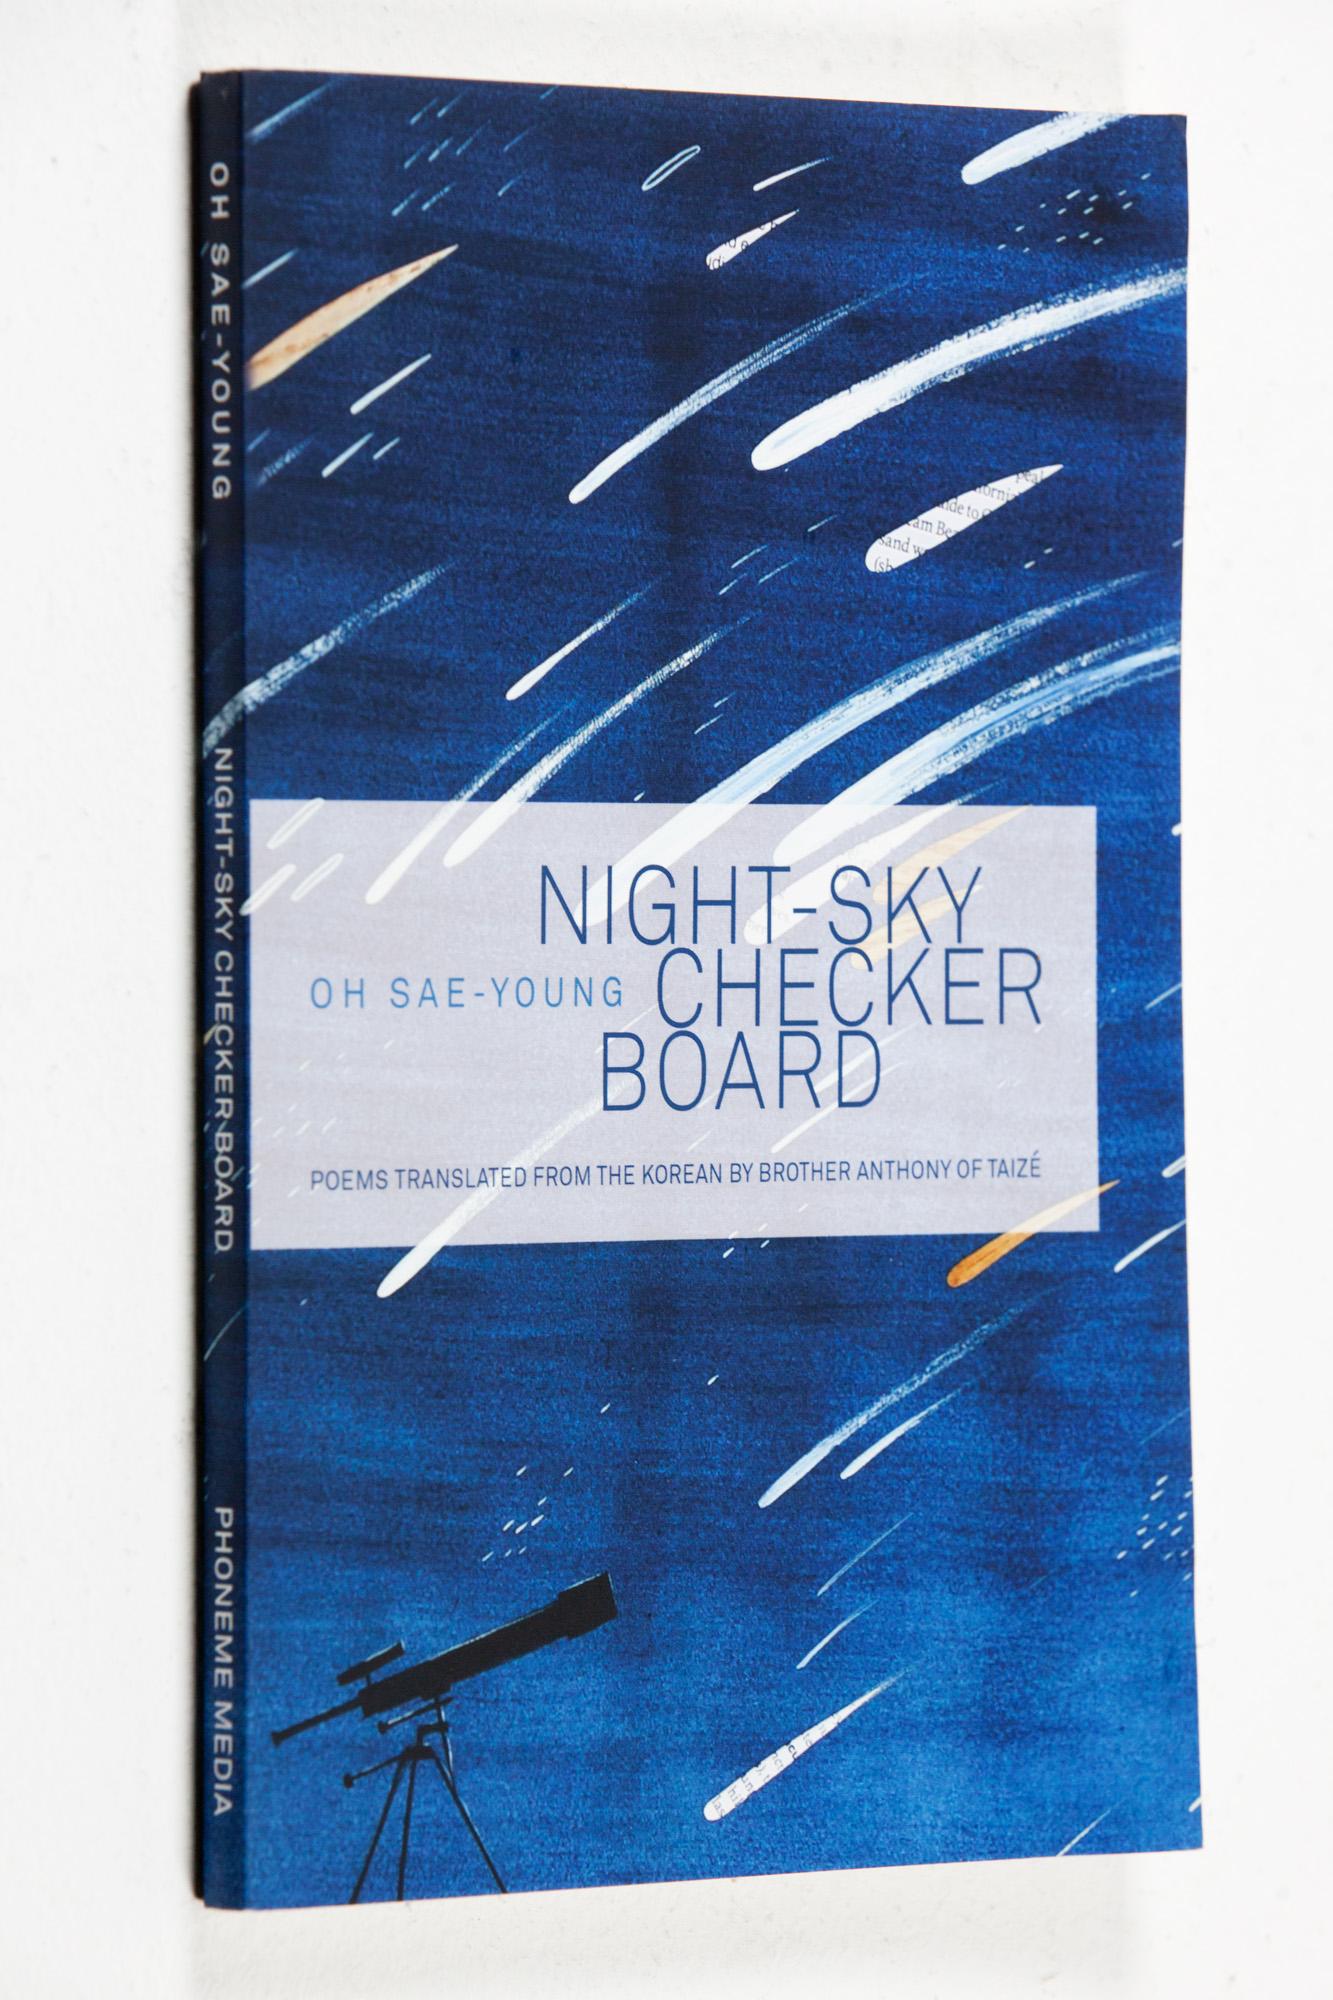 오세영;시집;밤하늘의바둑판;Night-SkyCheckerboard